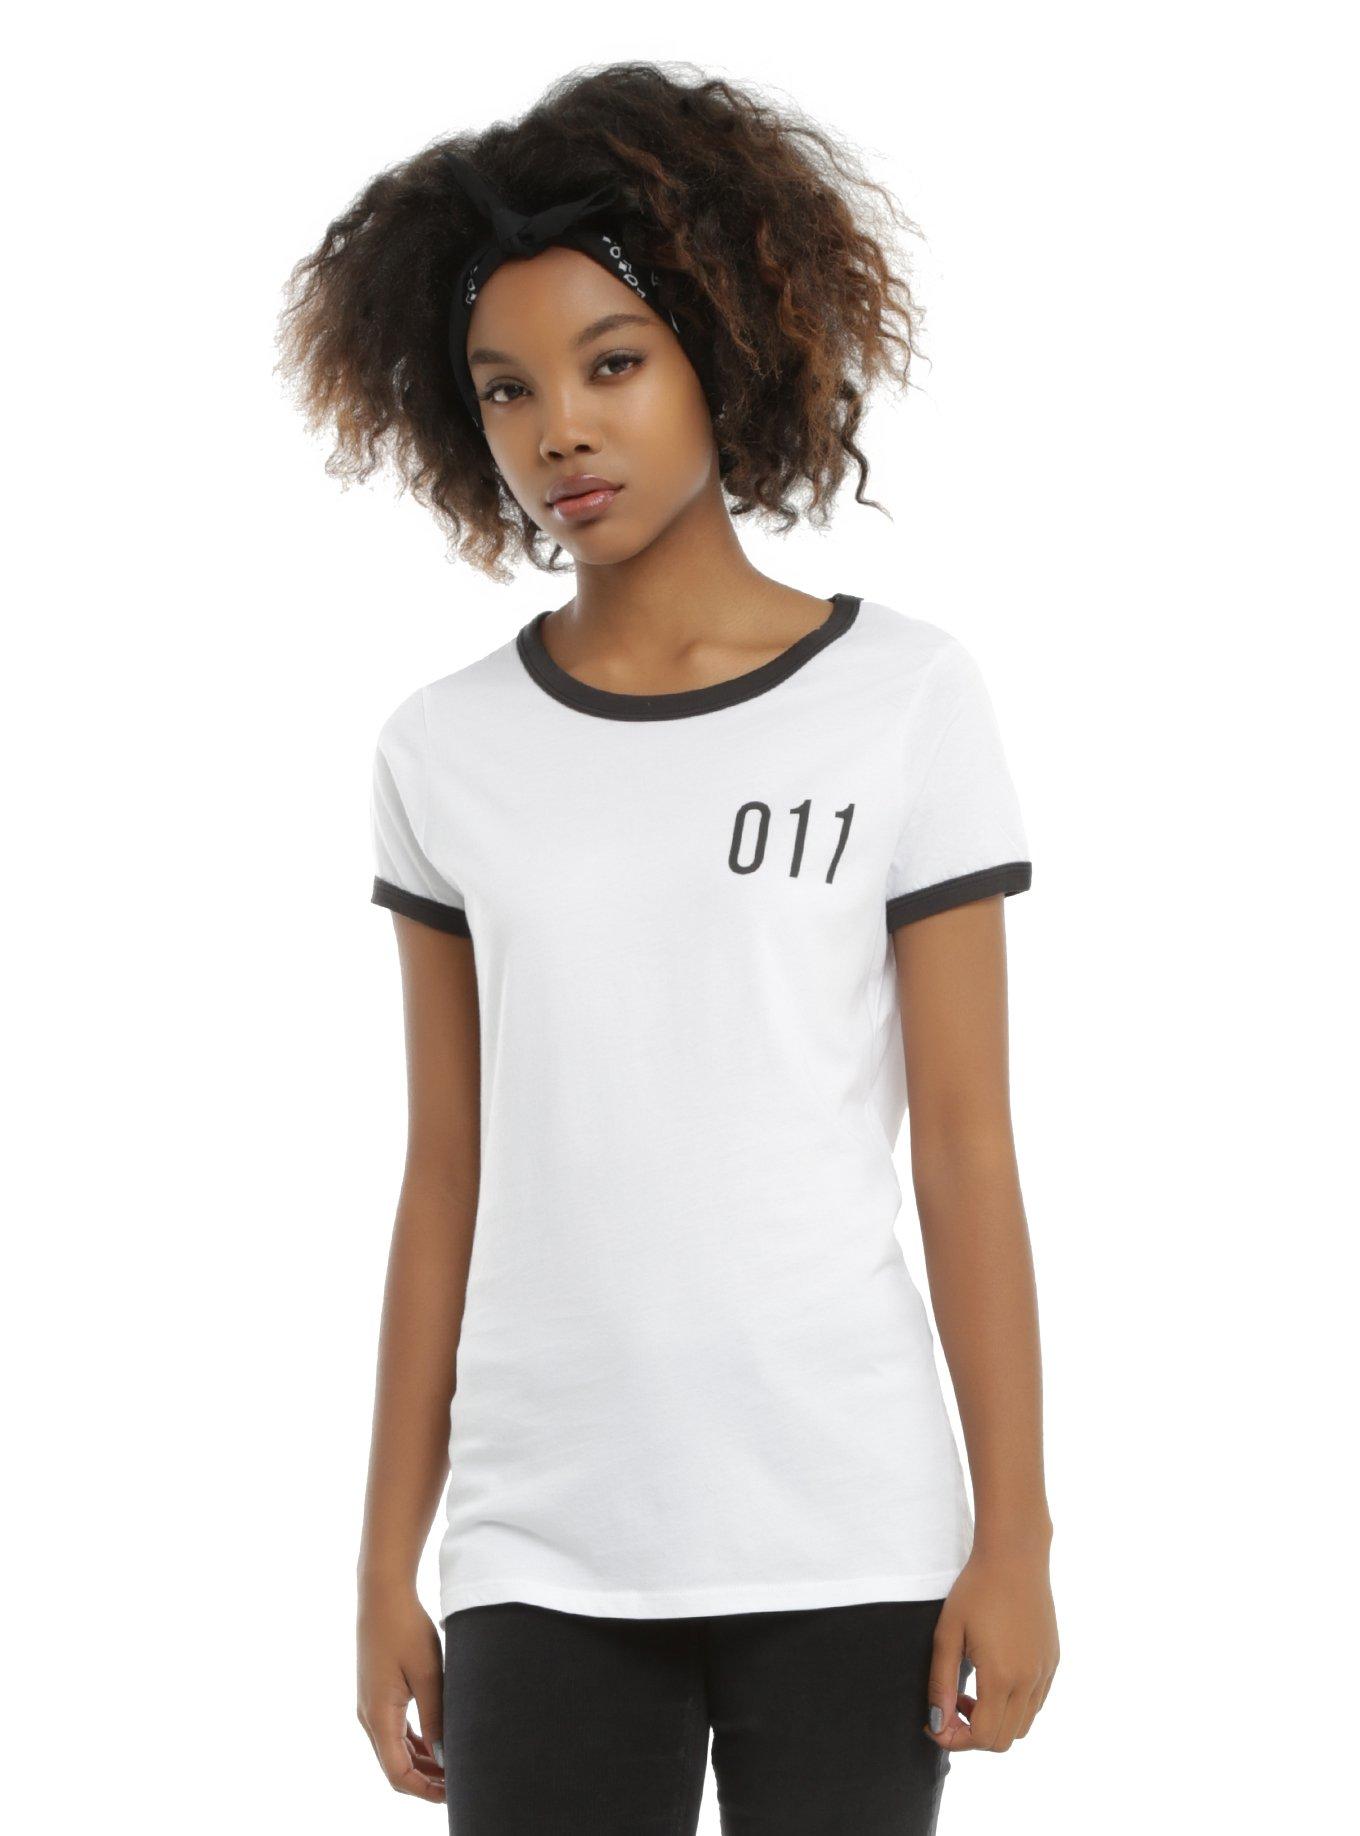 011 Girls Ringer T-Shirt, WHITE, hi-res